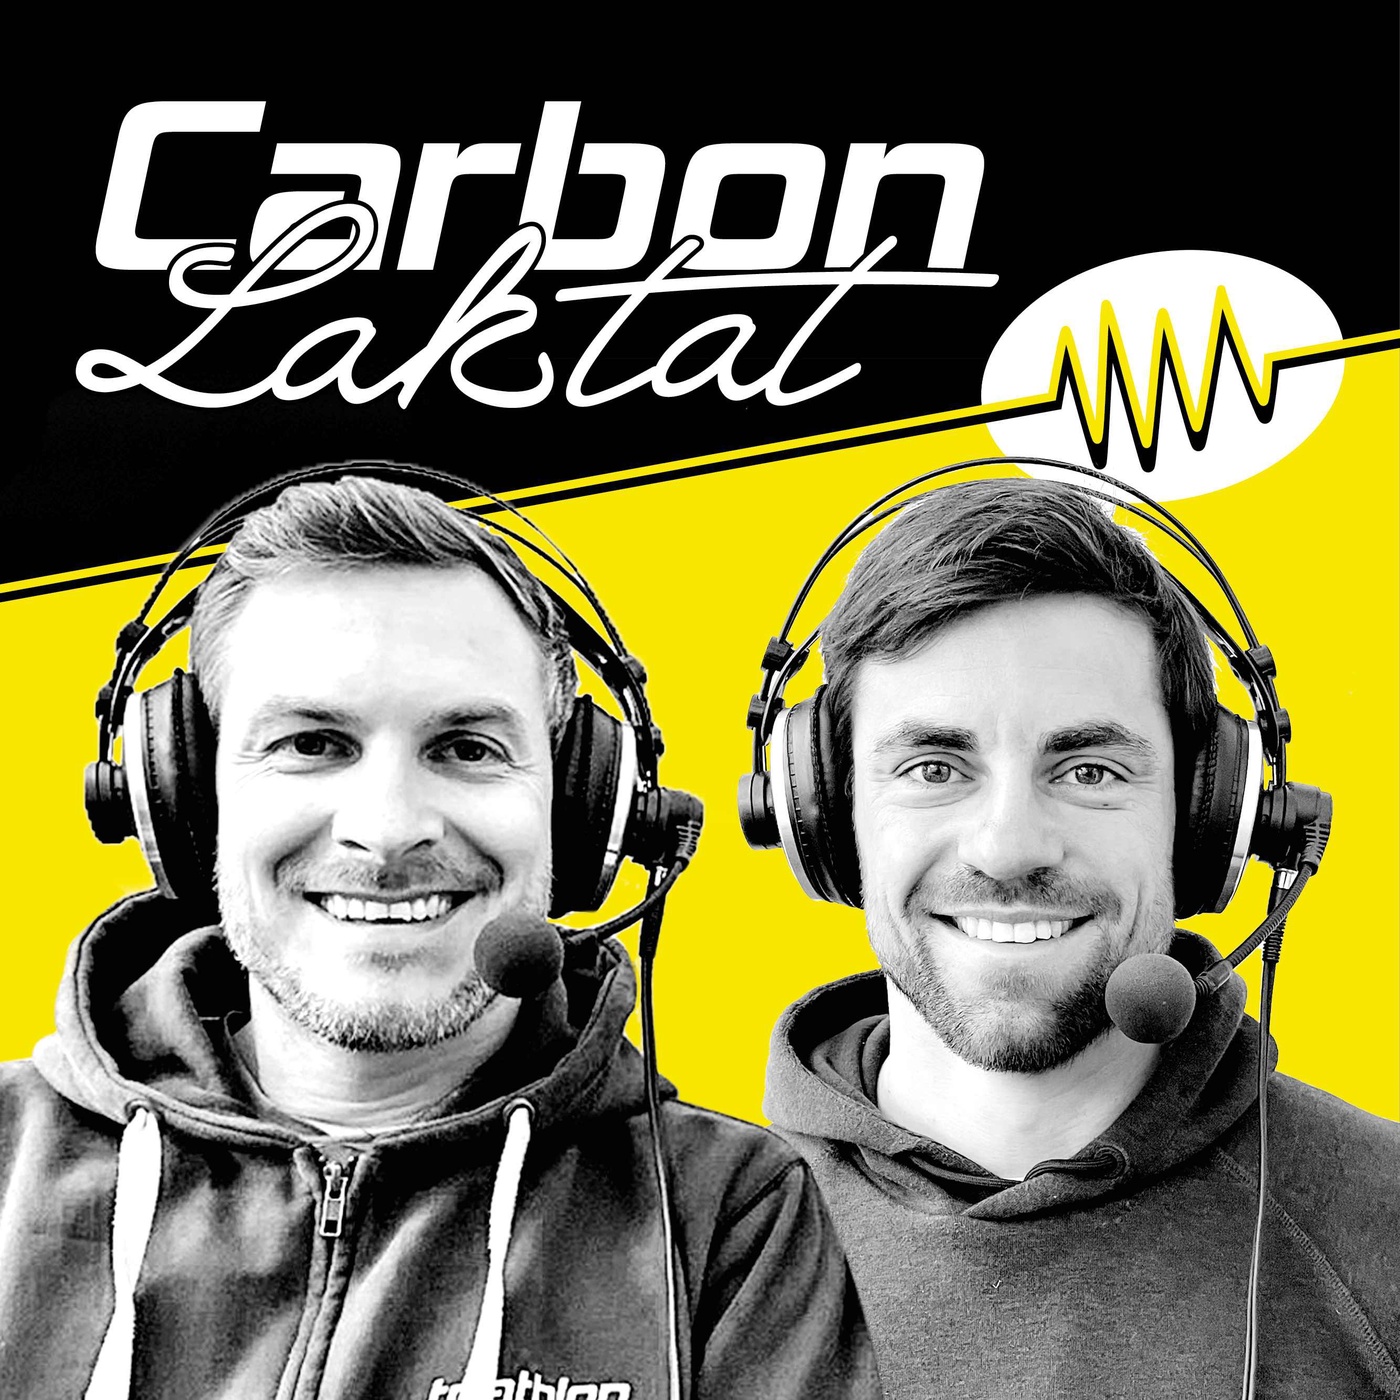 Carbon & Laktat: Frodeno mit Feuerwerk, Norseman mit Gewitter